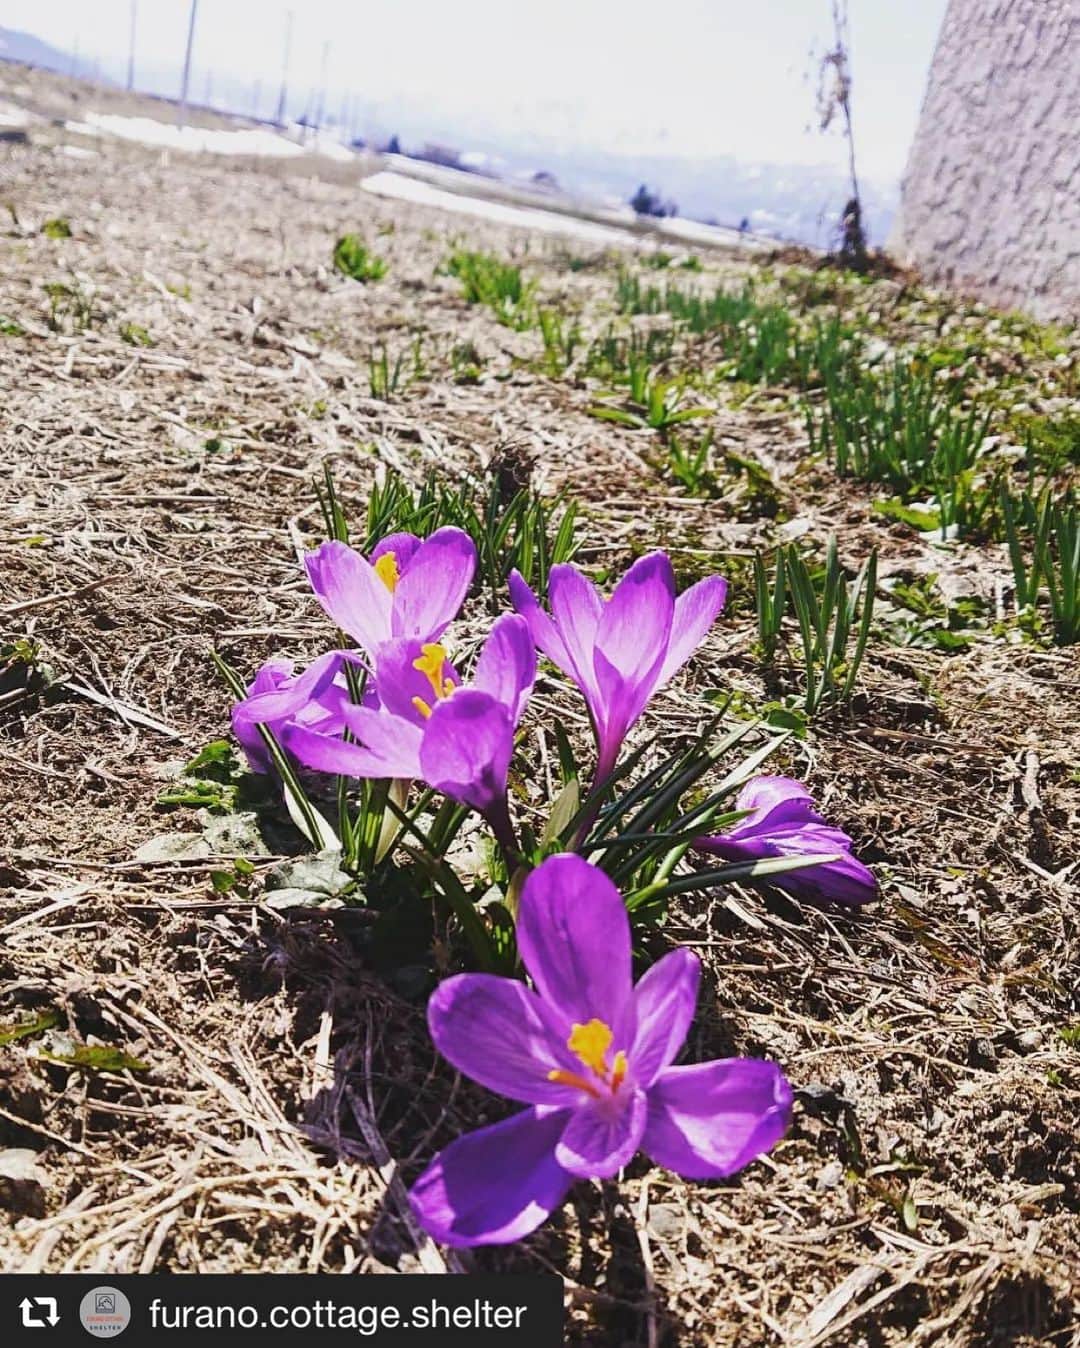 旅して体験！北海道のインスタグラム：「✽  ▶︎Photo by Furano Cottage Shelter(@furano.cottage.shelter) 様  --------------------  富良野もだいぶ暖かくなってきて春の花が咲いてきました！  今回写真を撮ったのはサフランという球根タイプの春のお花です！ 小さい花ですが春になると回りの雑草より早く咲き始めるので目立ちますね！ 実はスパイスなどにも使われこともあるようです。 食品の調味料や着色料に使用する、サフランは重量単位で比べると世界で最も高価なスパイスのひとつ、どんな味がするのか気になっちゃいますね！  散歩しながら花探しなんていかがでしょうか？？？  --------------------  #HOKKAIDOLOVE #旅して体験北海道 #北海道 #repost #富良野 #furano #コテージ #cottage」